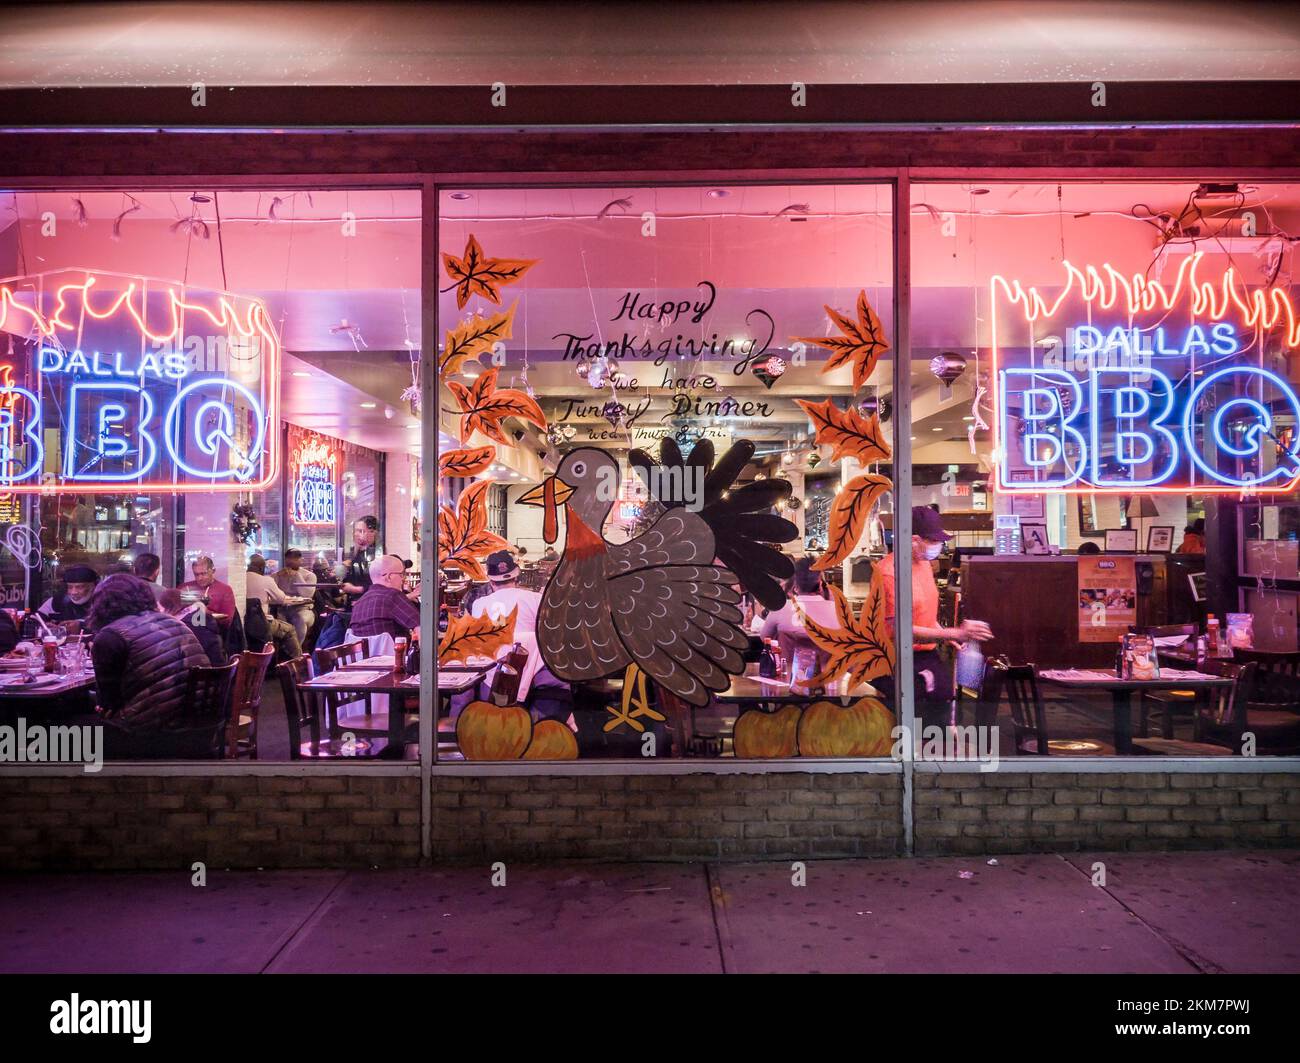 Das Dallas BBQ Restaurant in New York wirbt für ihr Thanksgiving Dinner, das am Dienstag, den 22. November 2022 gesehen wird. Die Inflation hat die Kosten eines Thanksgiving-Abendessens gegenüber dem Vorjahr um 20% erhöht. (© Richard B. Levine) Stockfoto